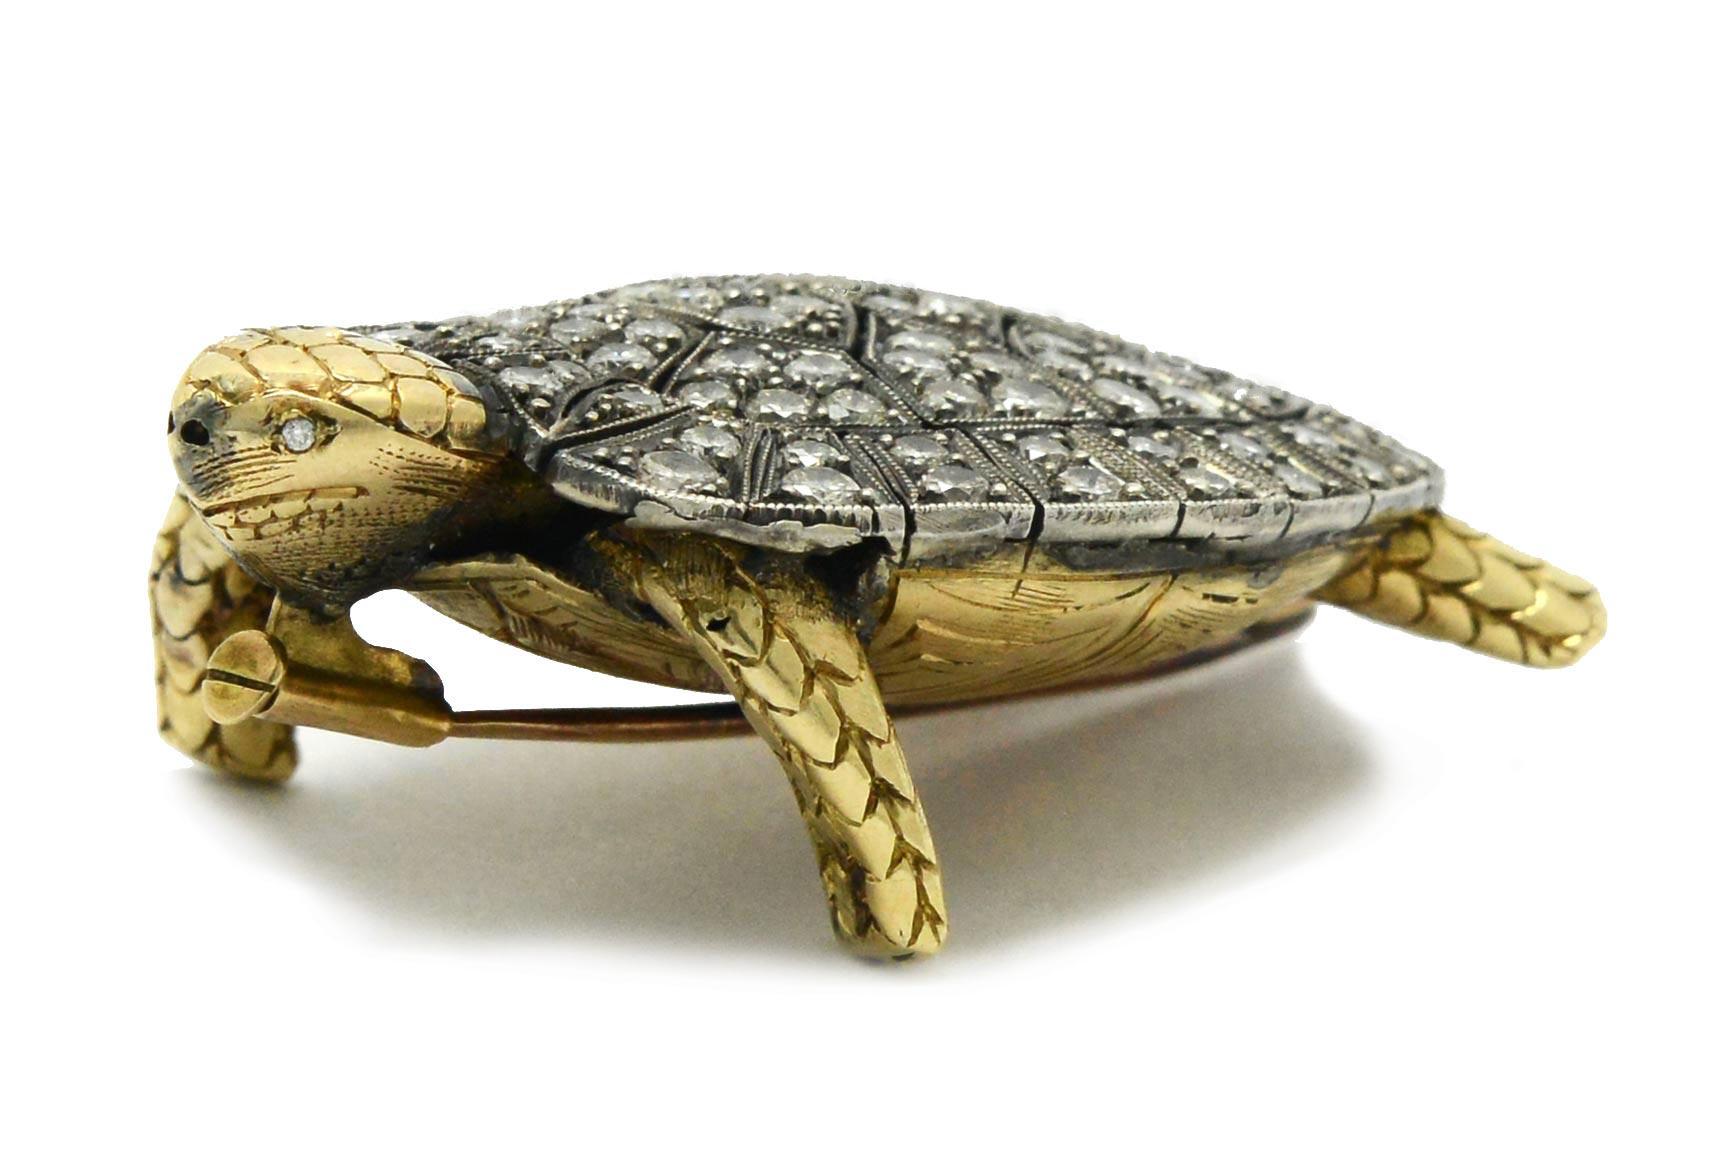 diamondback turtle for sale